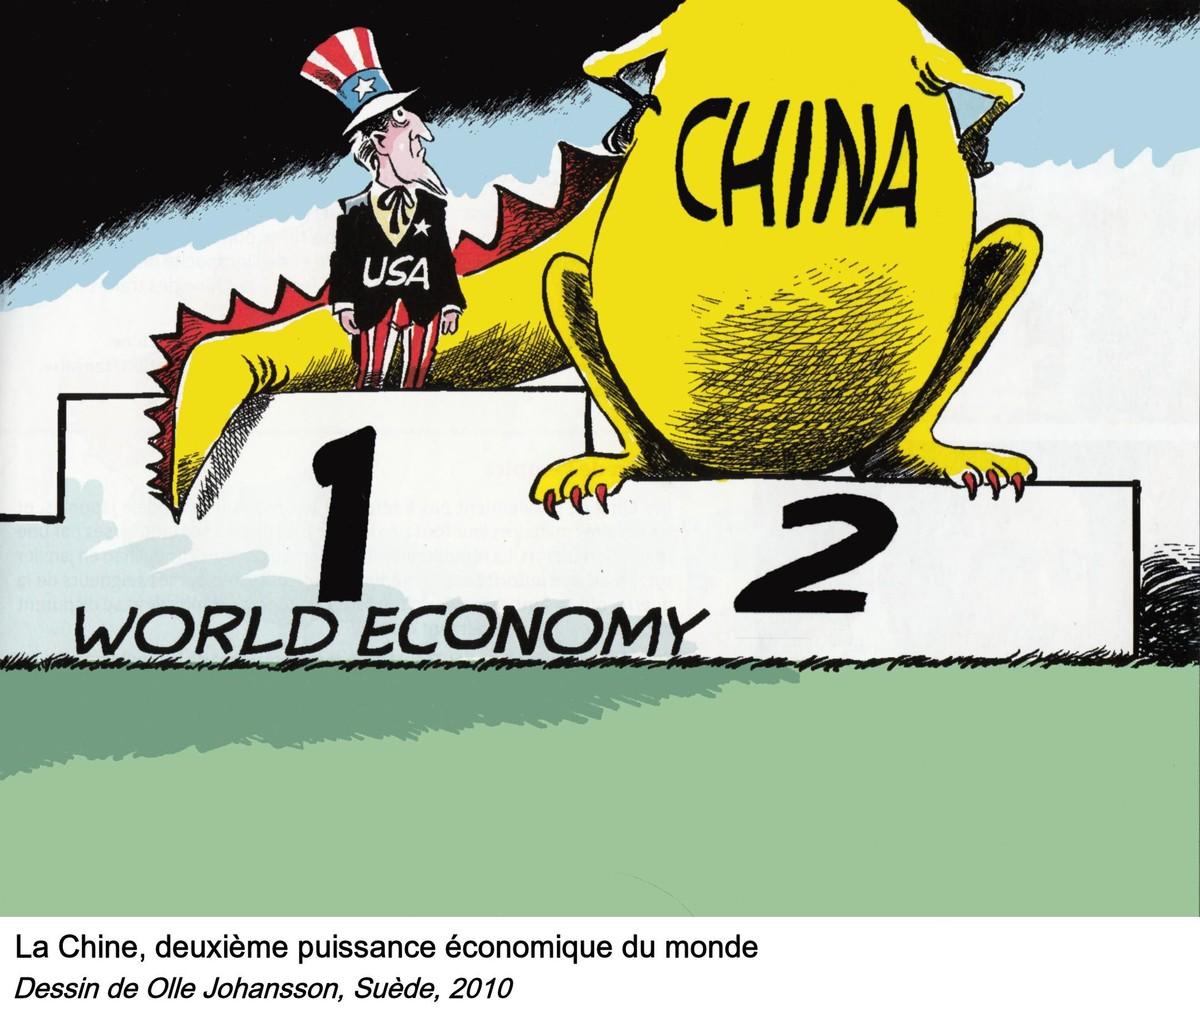 >La Chine, deuxième puissance économique du monde, dessin de Olle Johansson, 2010.